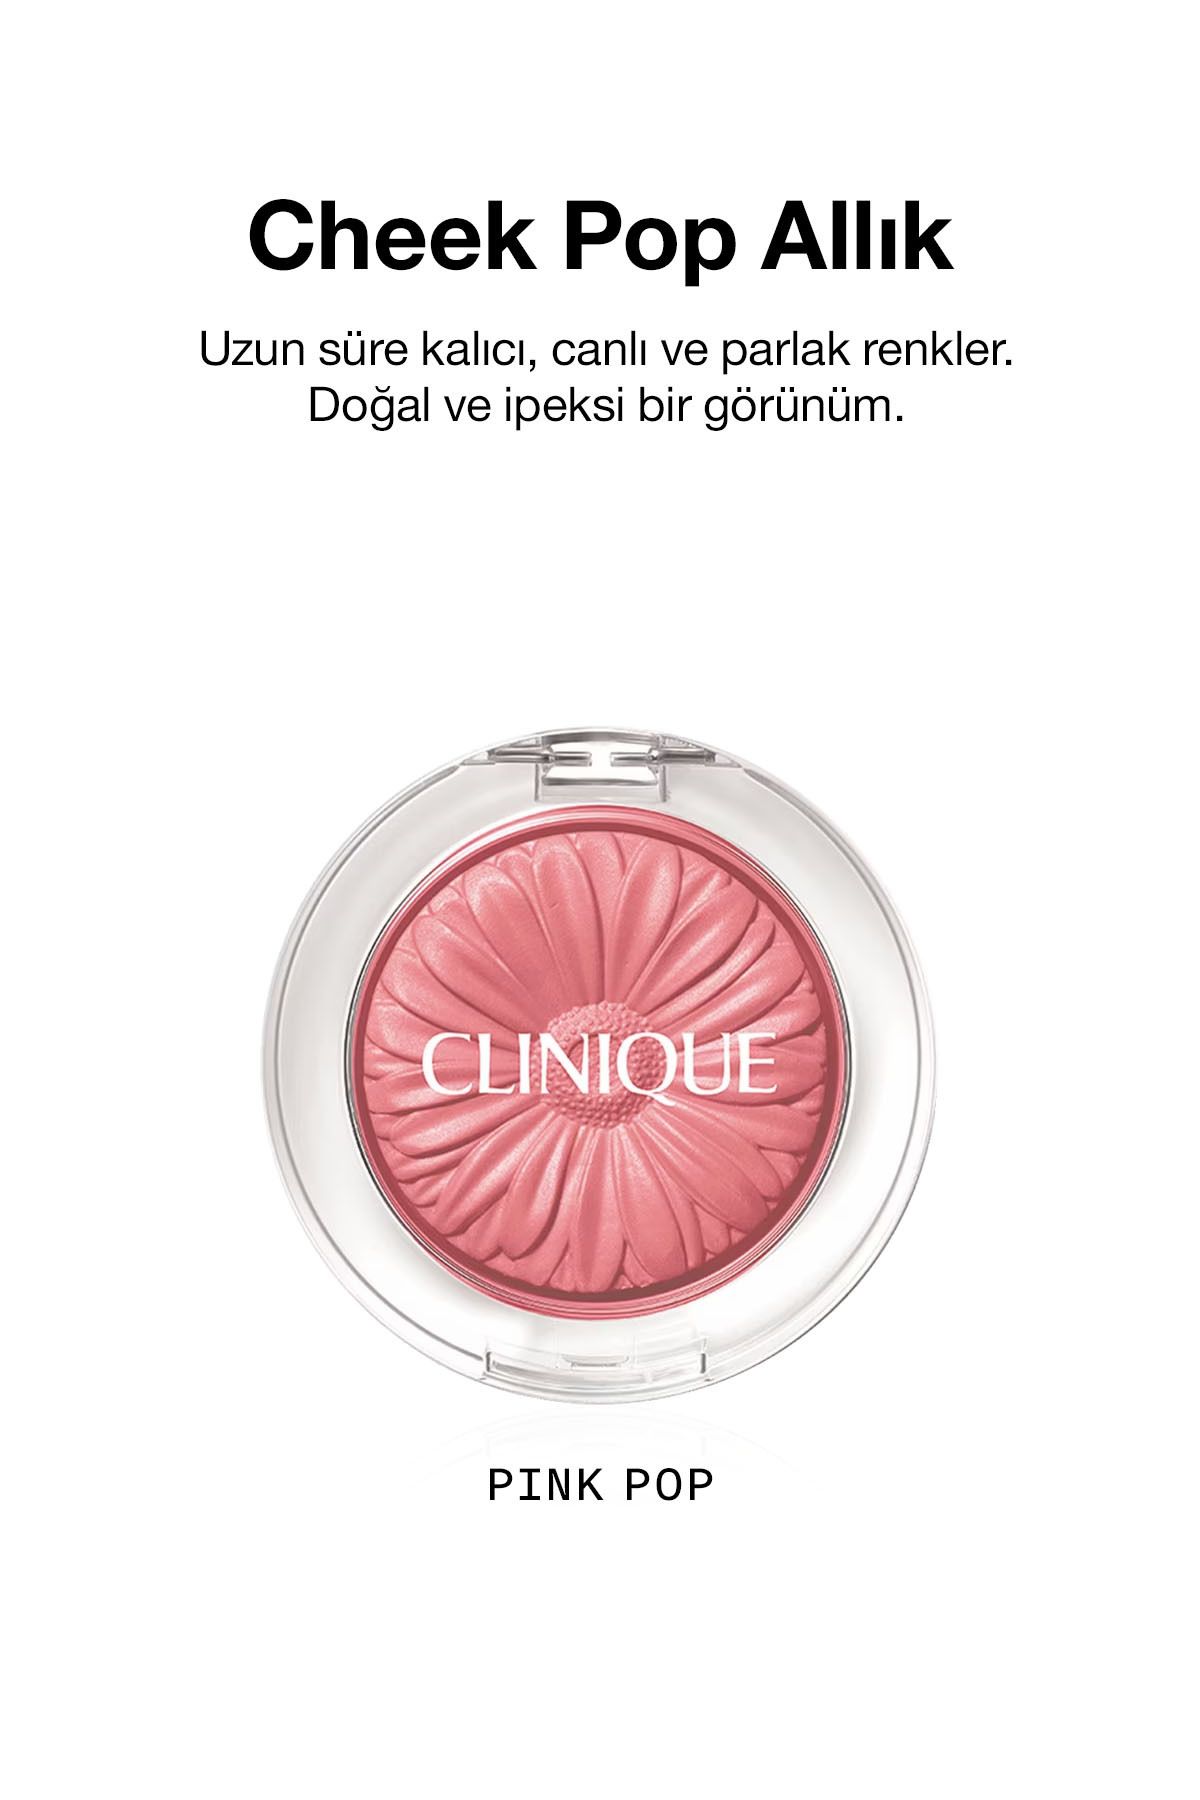 Clinique Cheek Pop Allık - Pink Pop 3.5gm/.12oz 192333101209